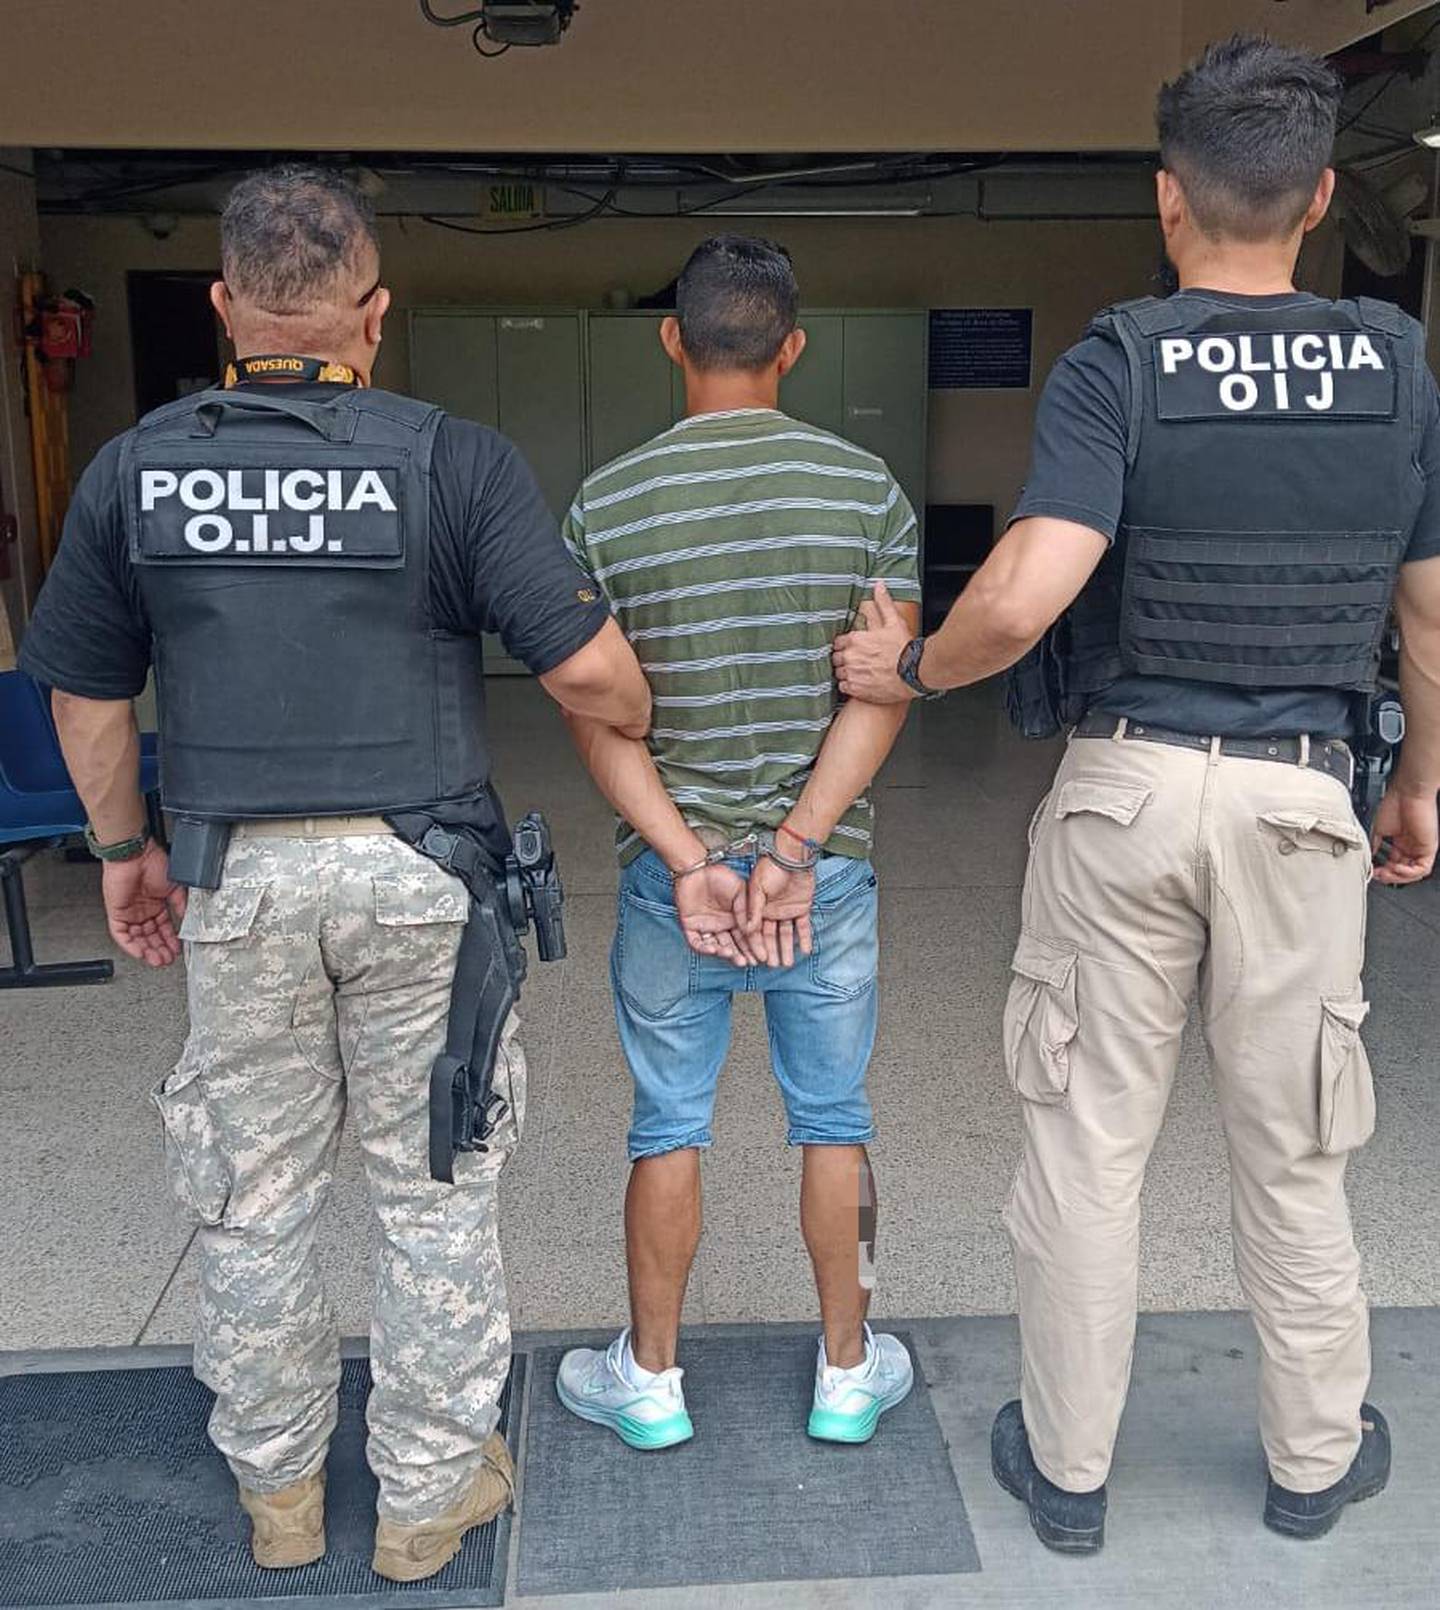 El sospechoso fue detenido este jueves en Pococí. Foto OIJ.